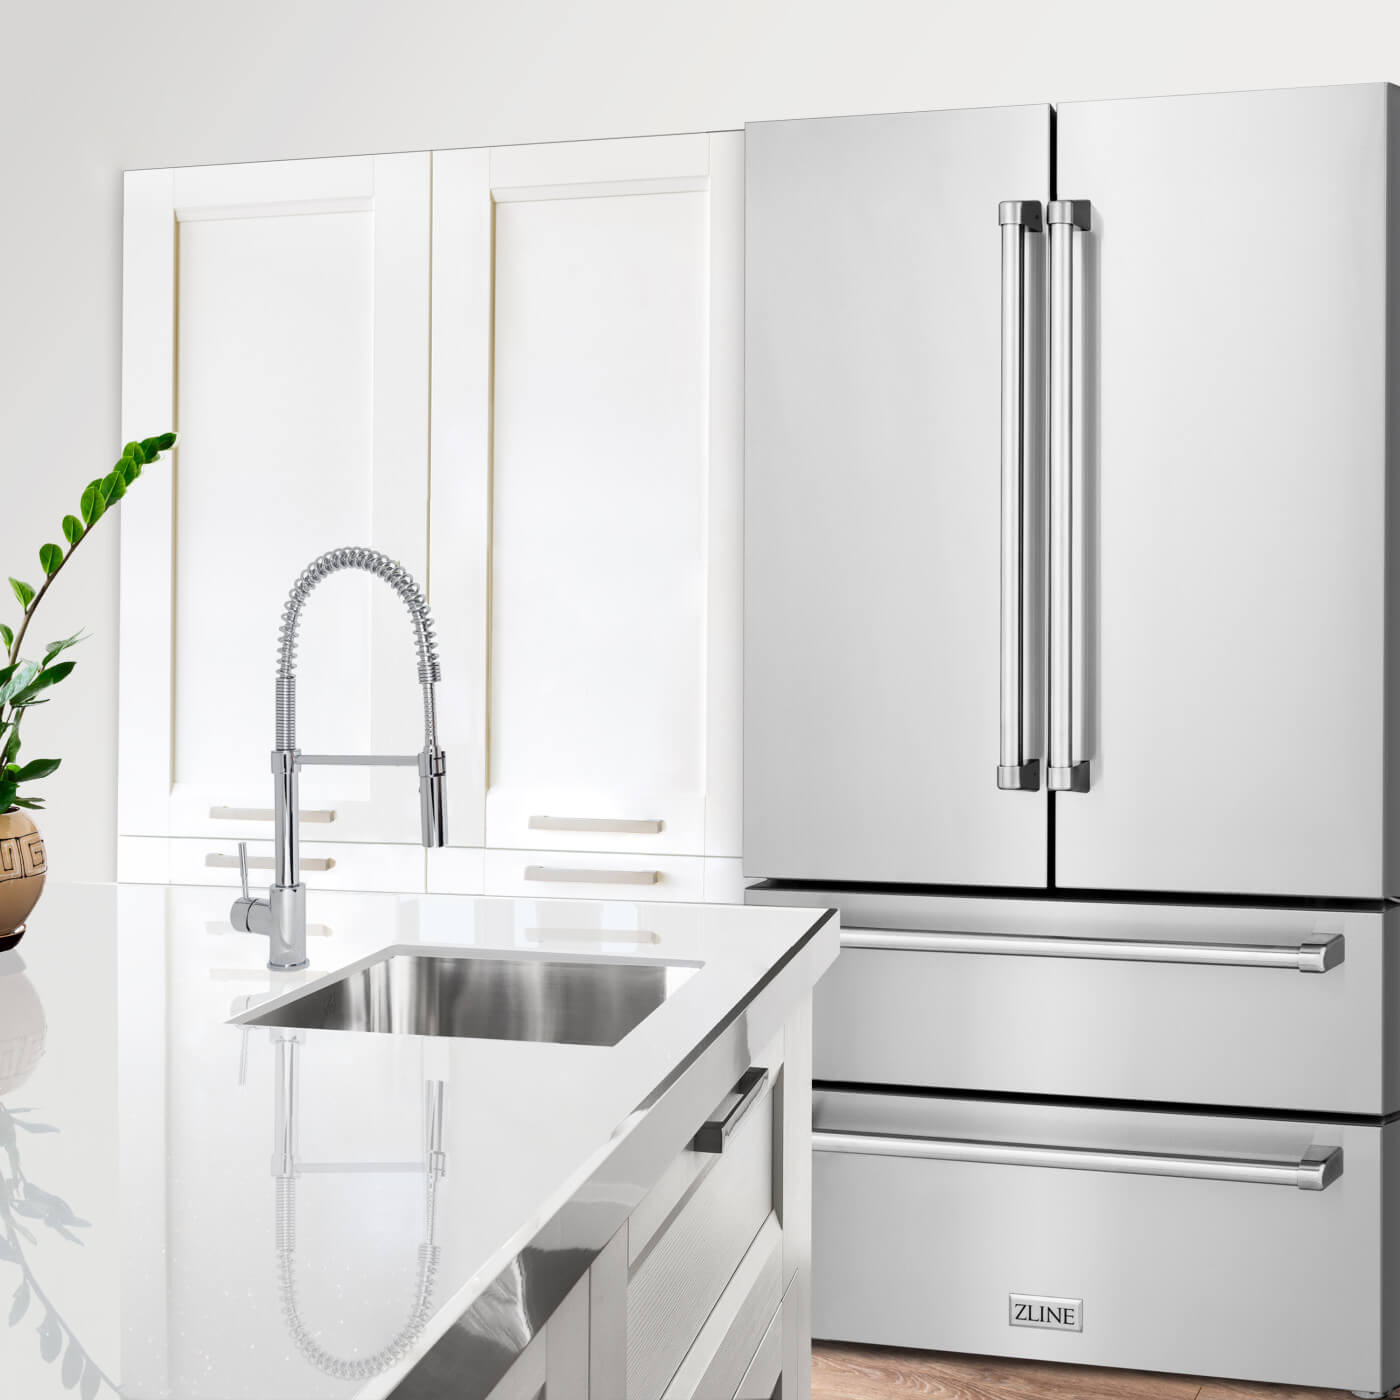 ZLINE Refrigerator in modern kitchen